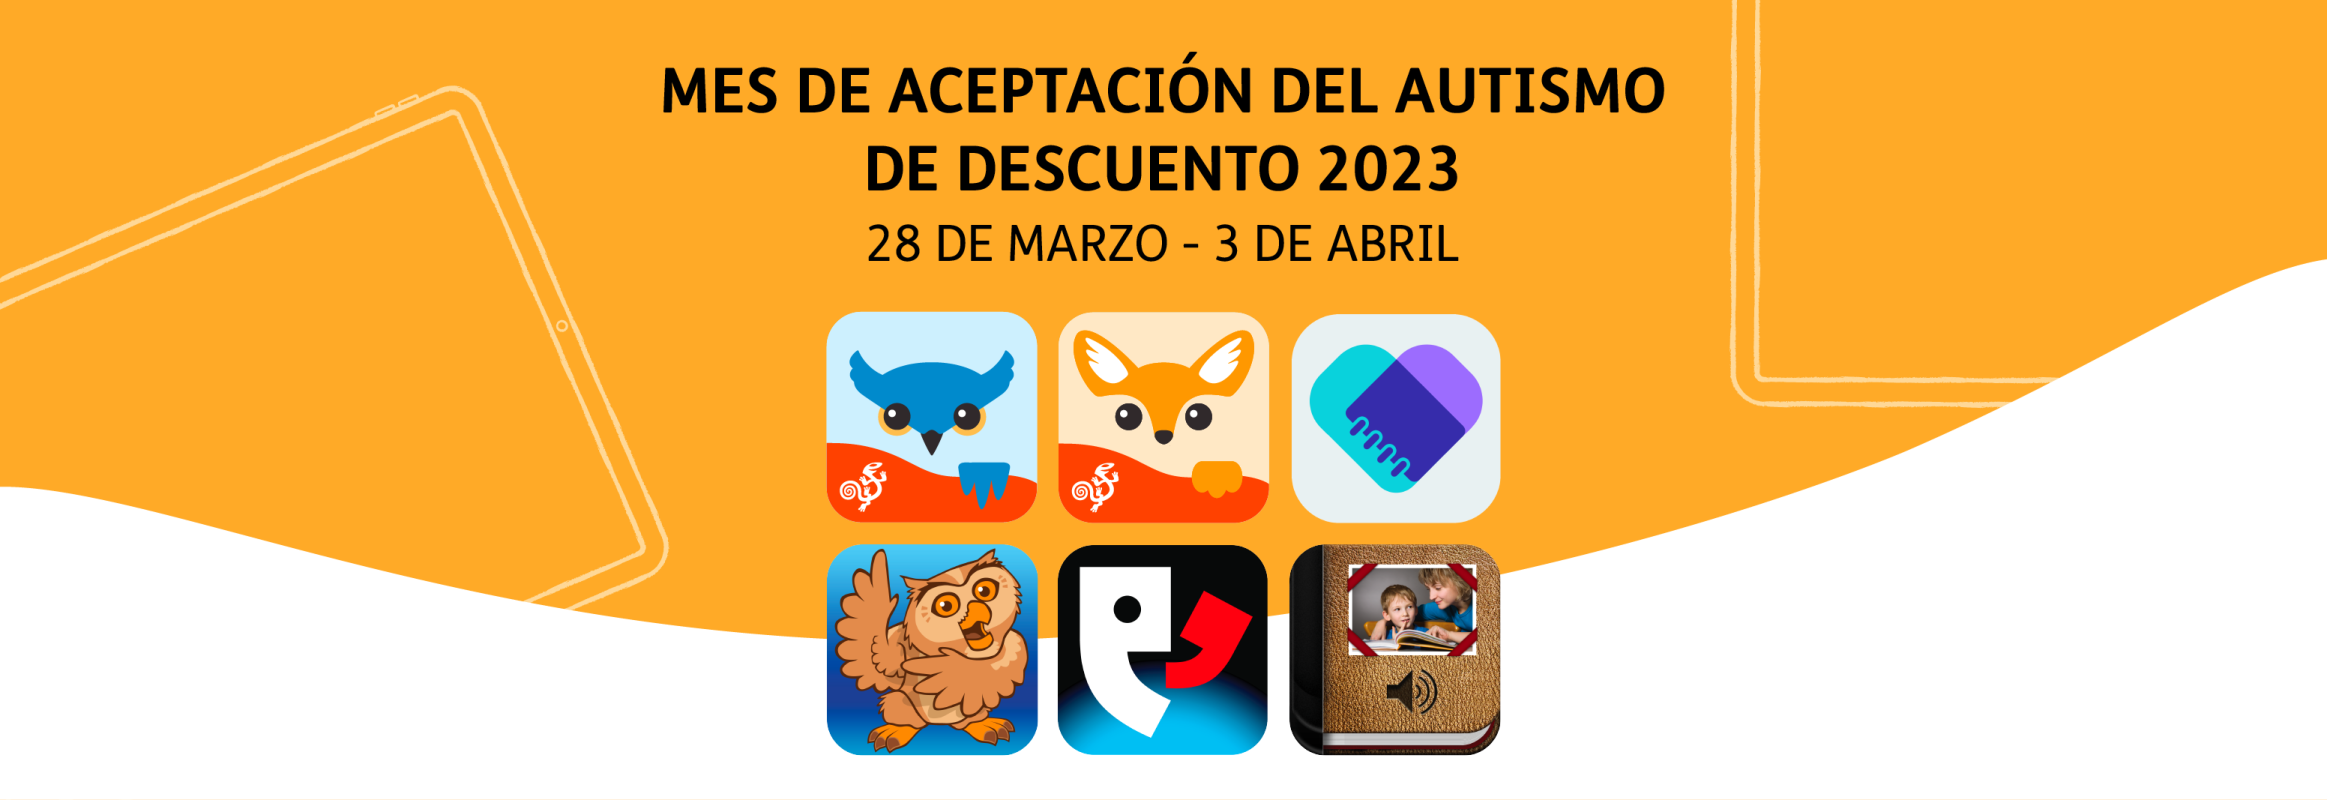 Mes de Aceptacion del autismo de descuento 2023 28 marzo - 3 de Abril